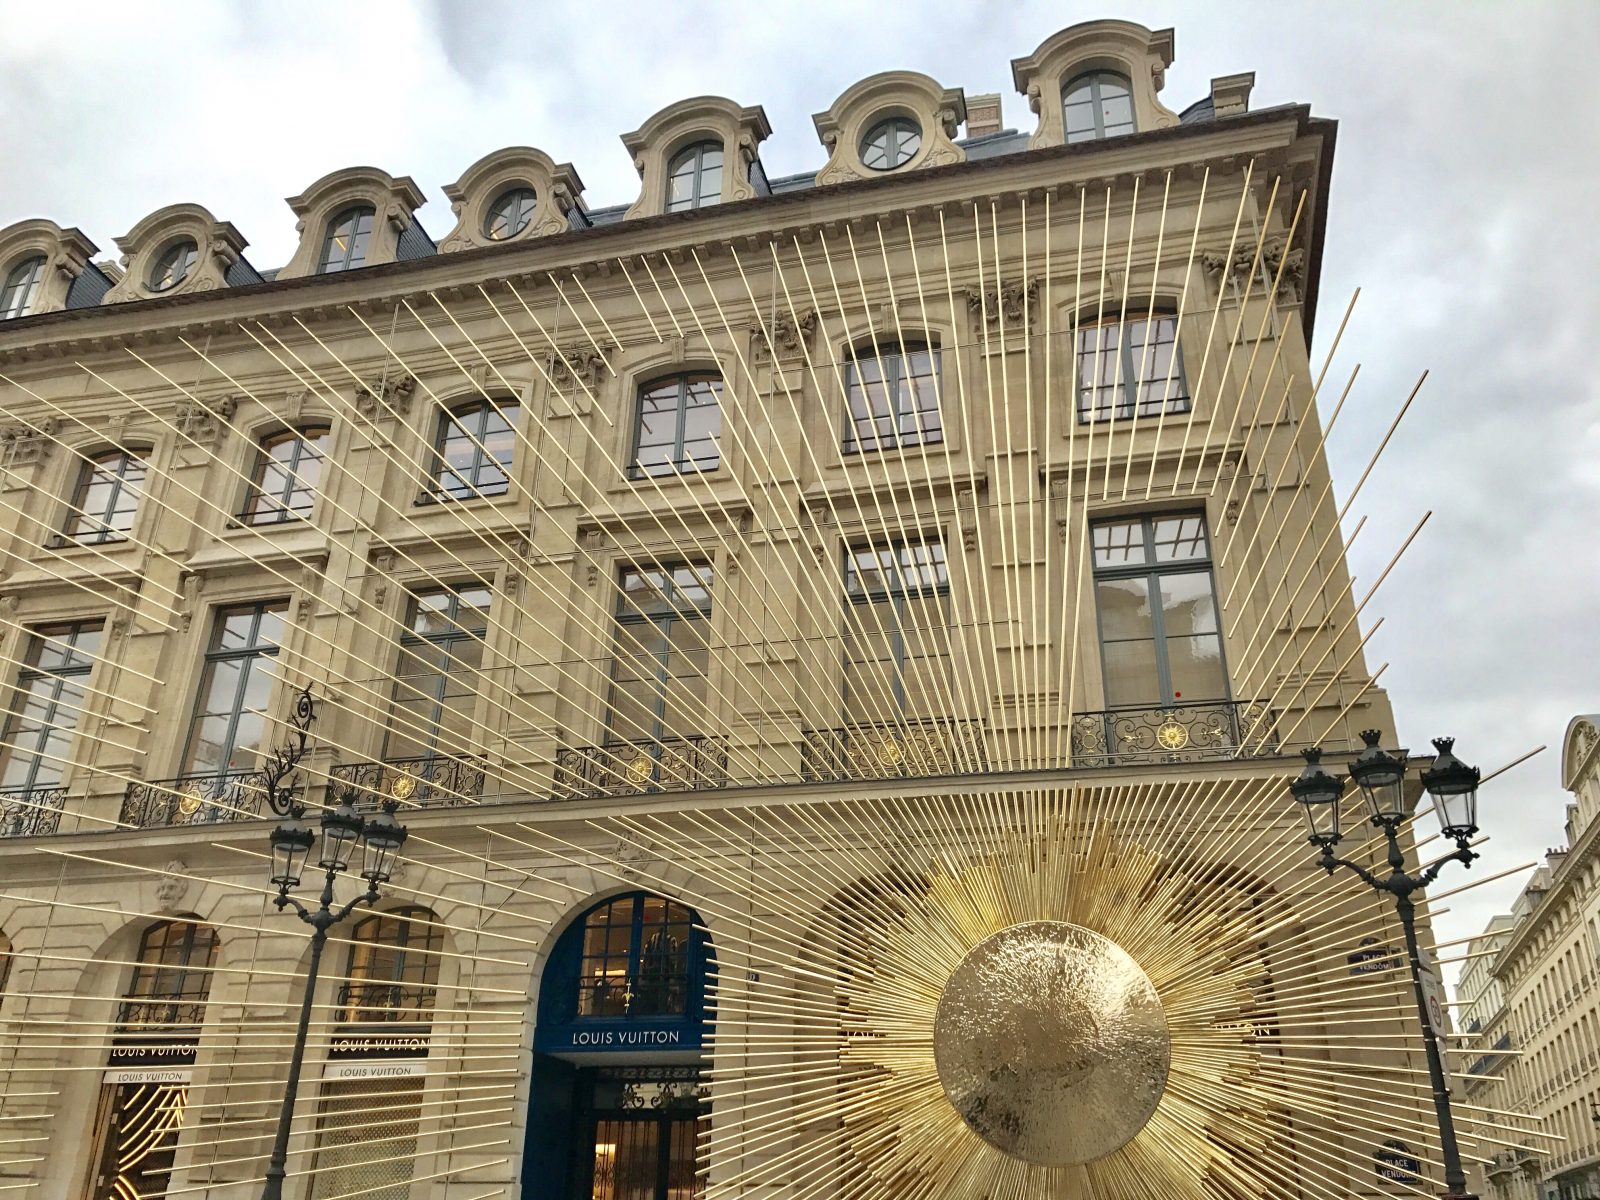 Joaillerie de luxe : LVMH s’approprie le nom de la commune de Vendôme